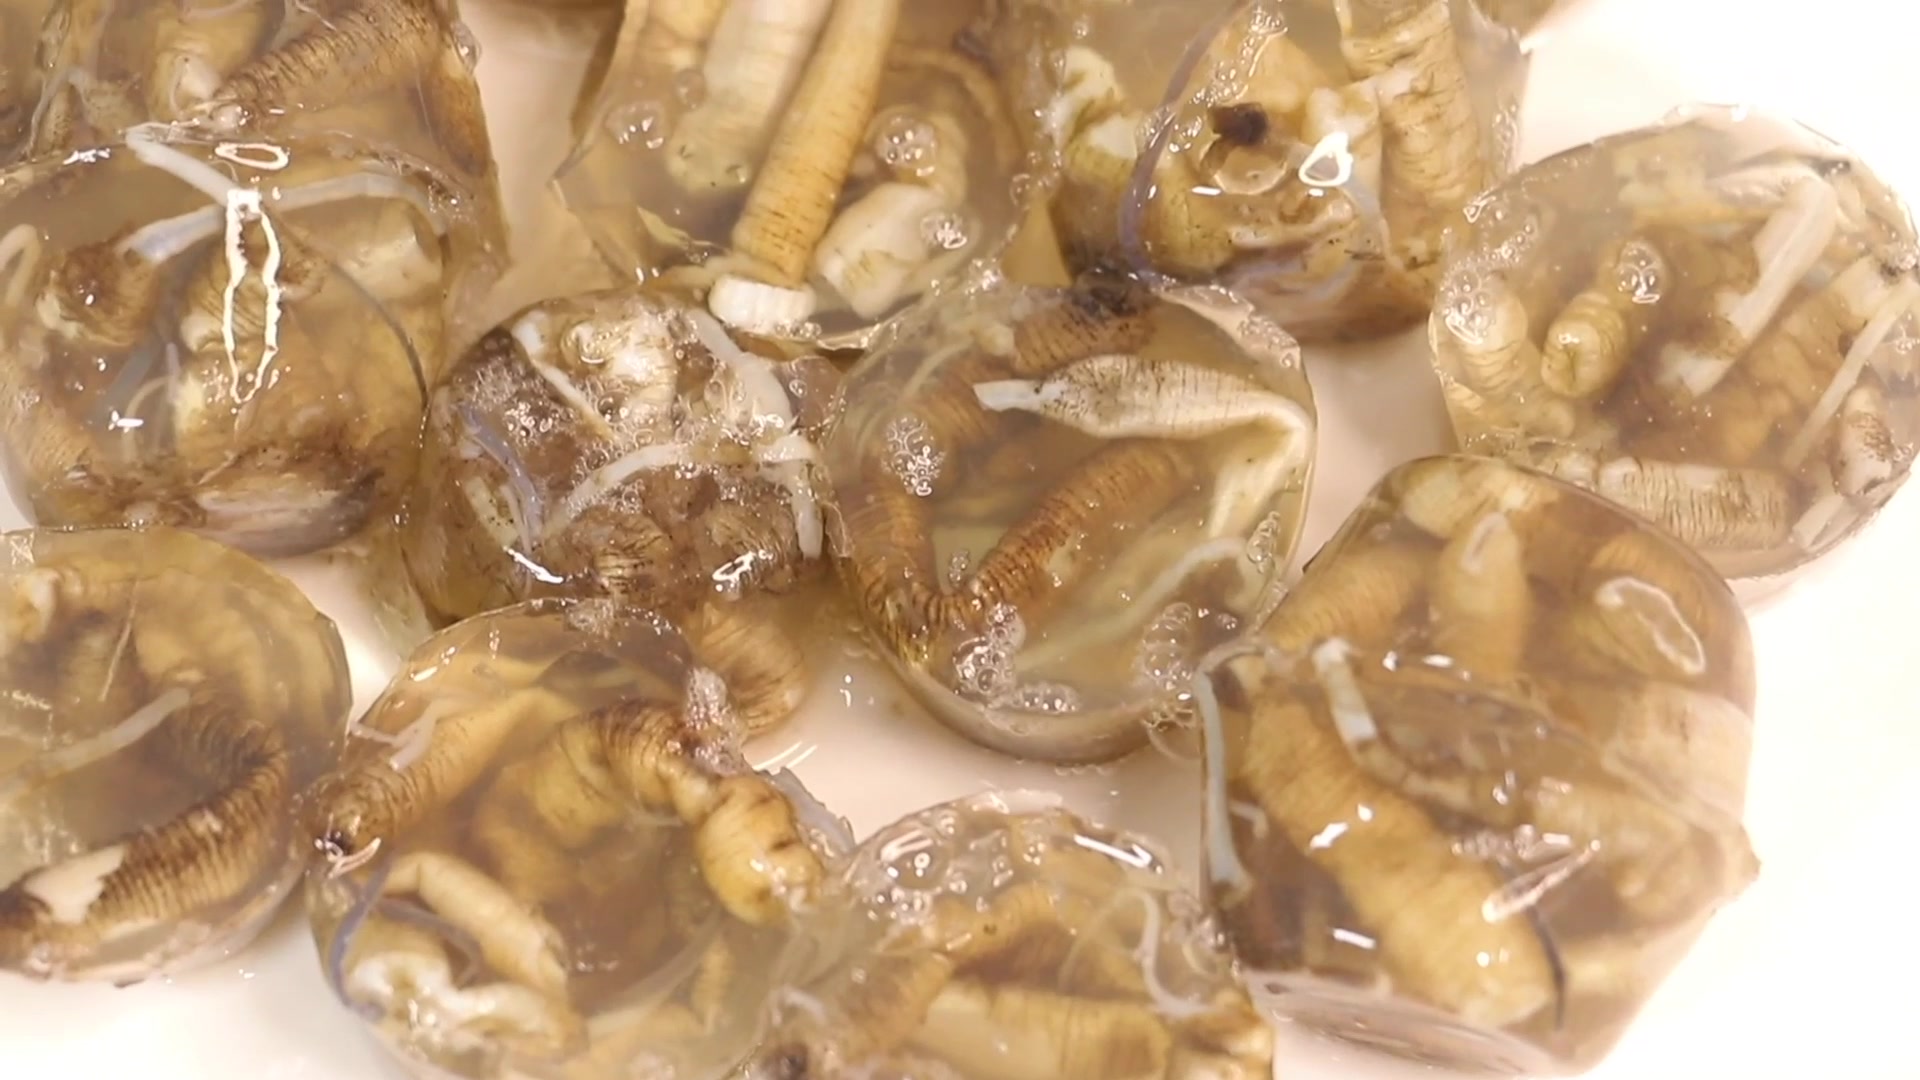 福建特产土笋冻就是在吃虫子呀感觉太不好了有喜欢吃的吗